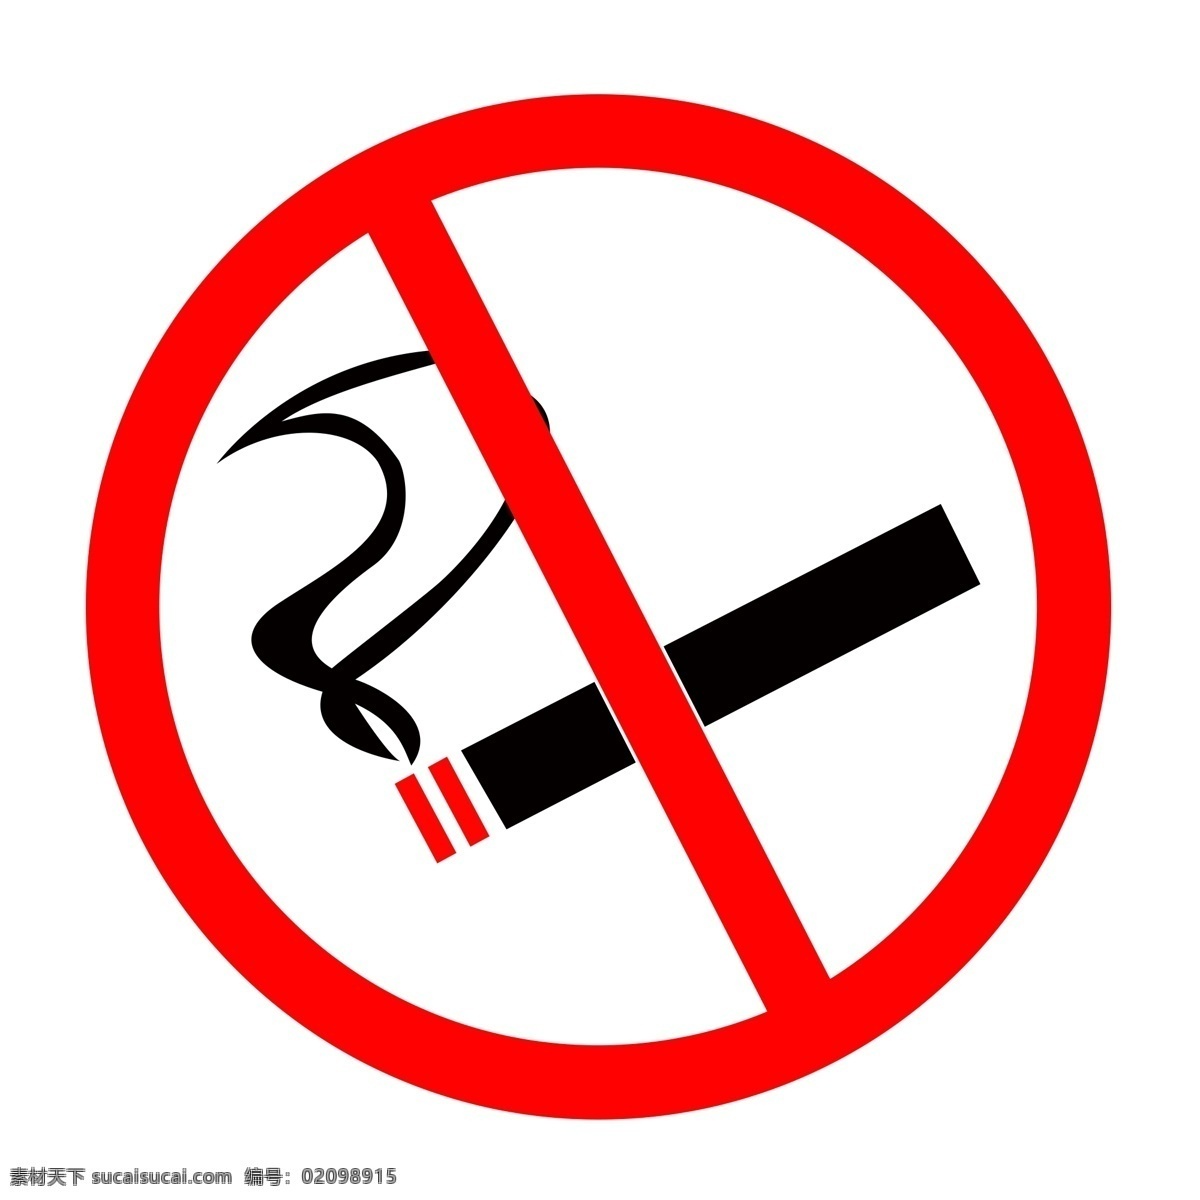 禁止吸烟标志 禁止吸烟 警示牌 公共场合 吸烟有害健康 展架 禁止 吸烟展架 请勿吸烟 有害健康 珍爱生命 远离烟草 展板 海报 吸烟海报 吸烟展板 禁止海报 关爱健康 健康海报 健康展板 无烟场所